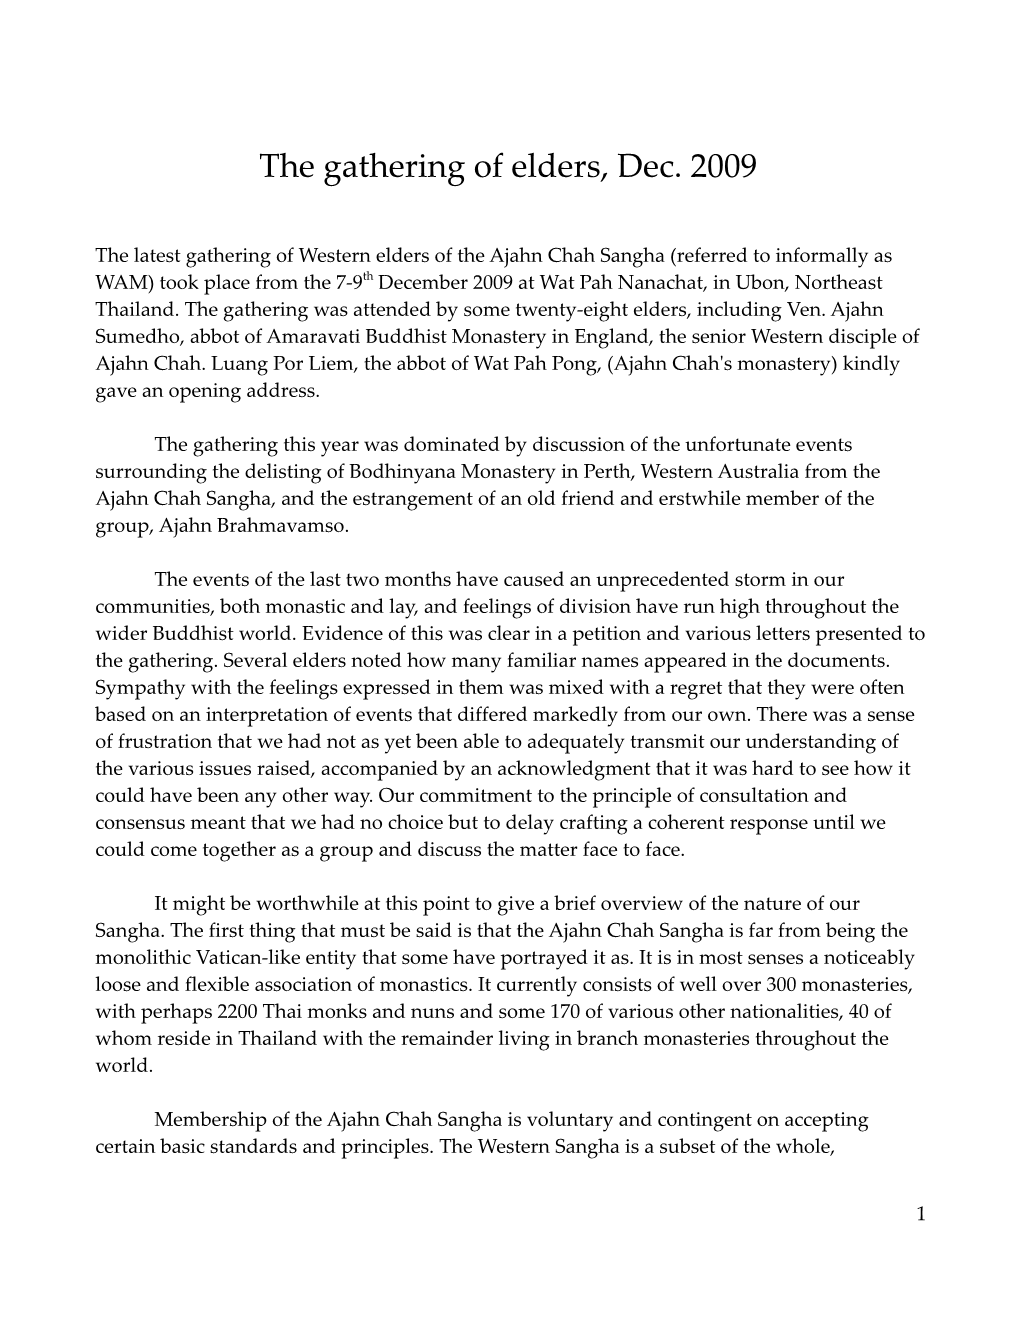 The Gathering of Elders, Dec. 2009